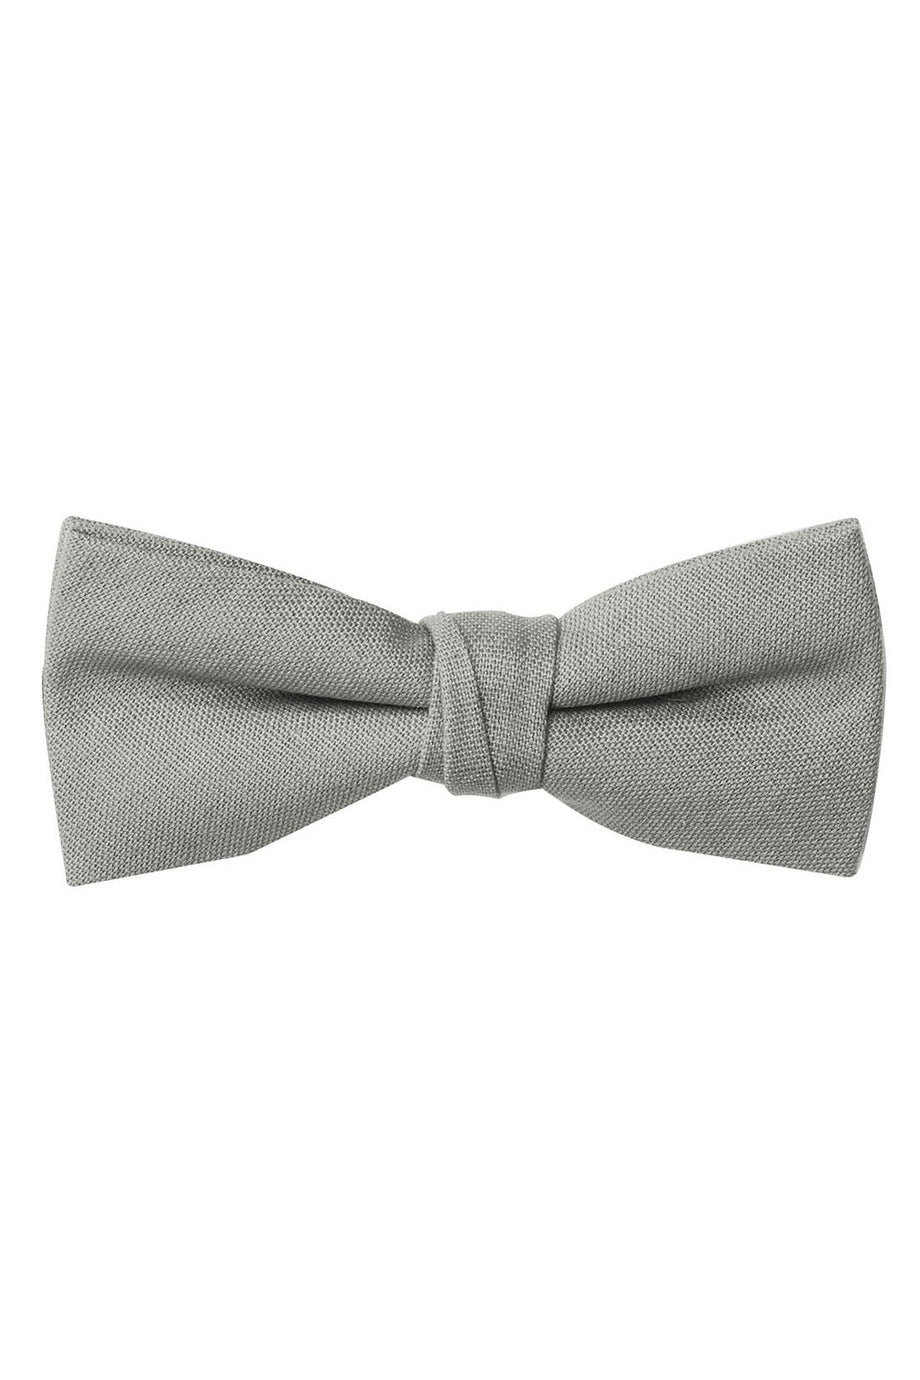 Tux Park Pre-Tied Grey Linen Bow Tie